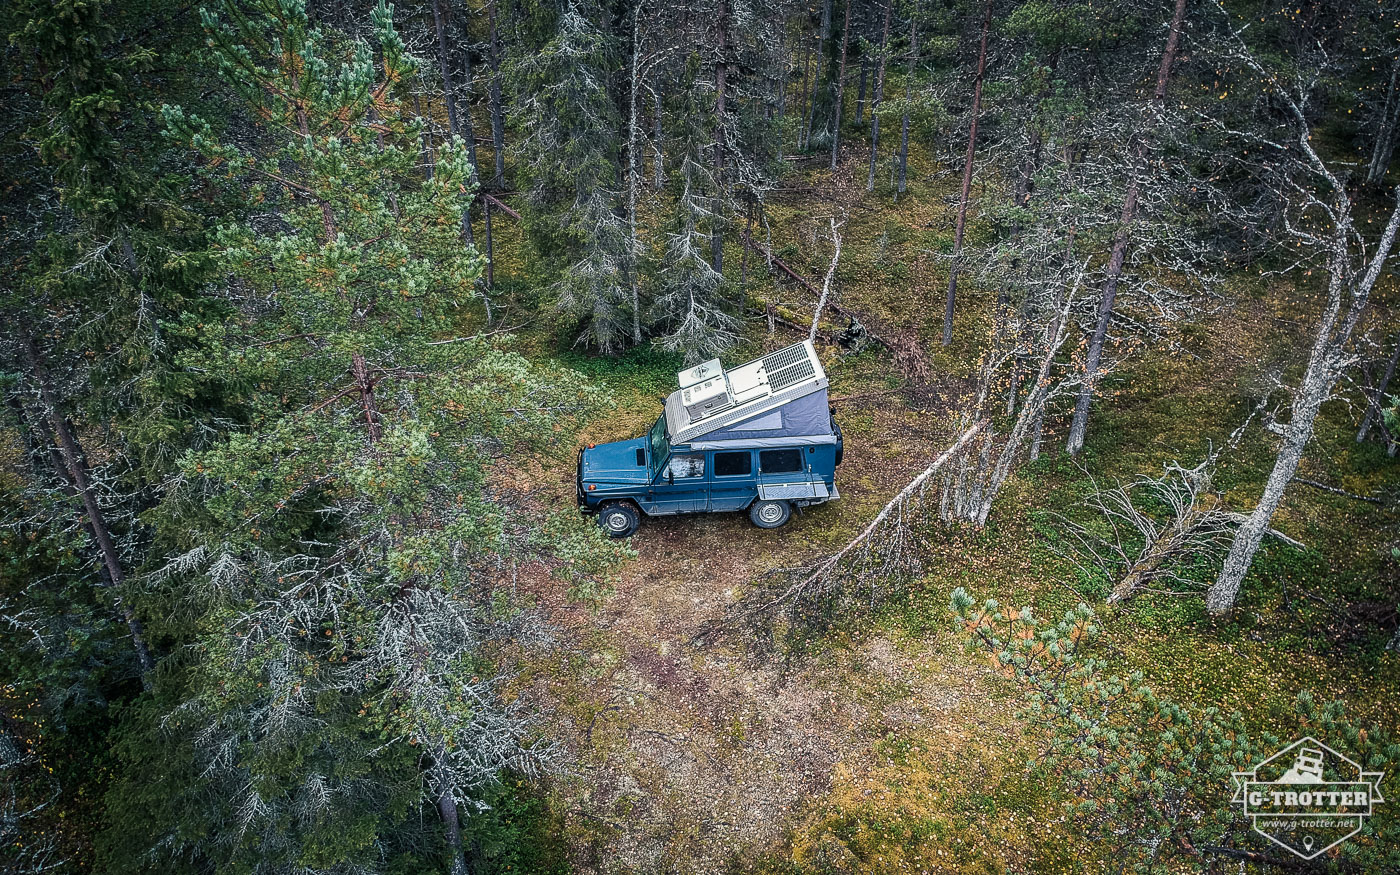 Sehr schöner Campspot mitten im Wald.